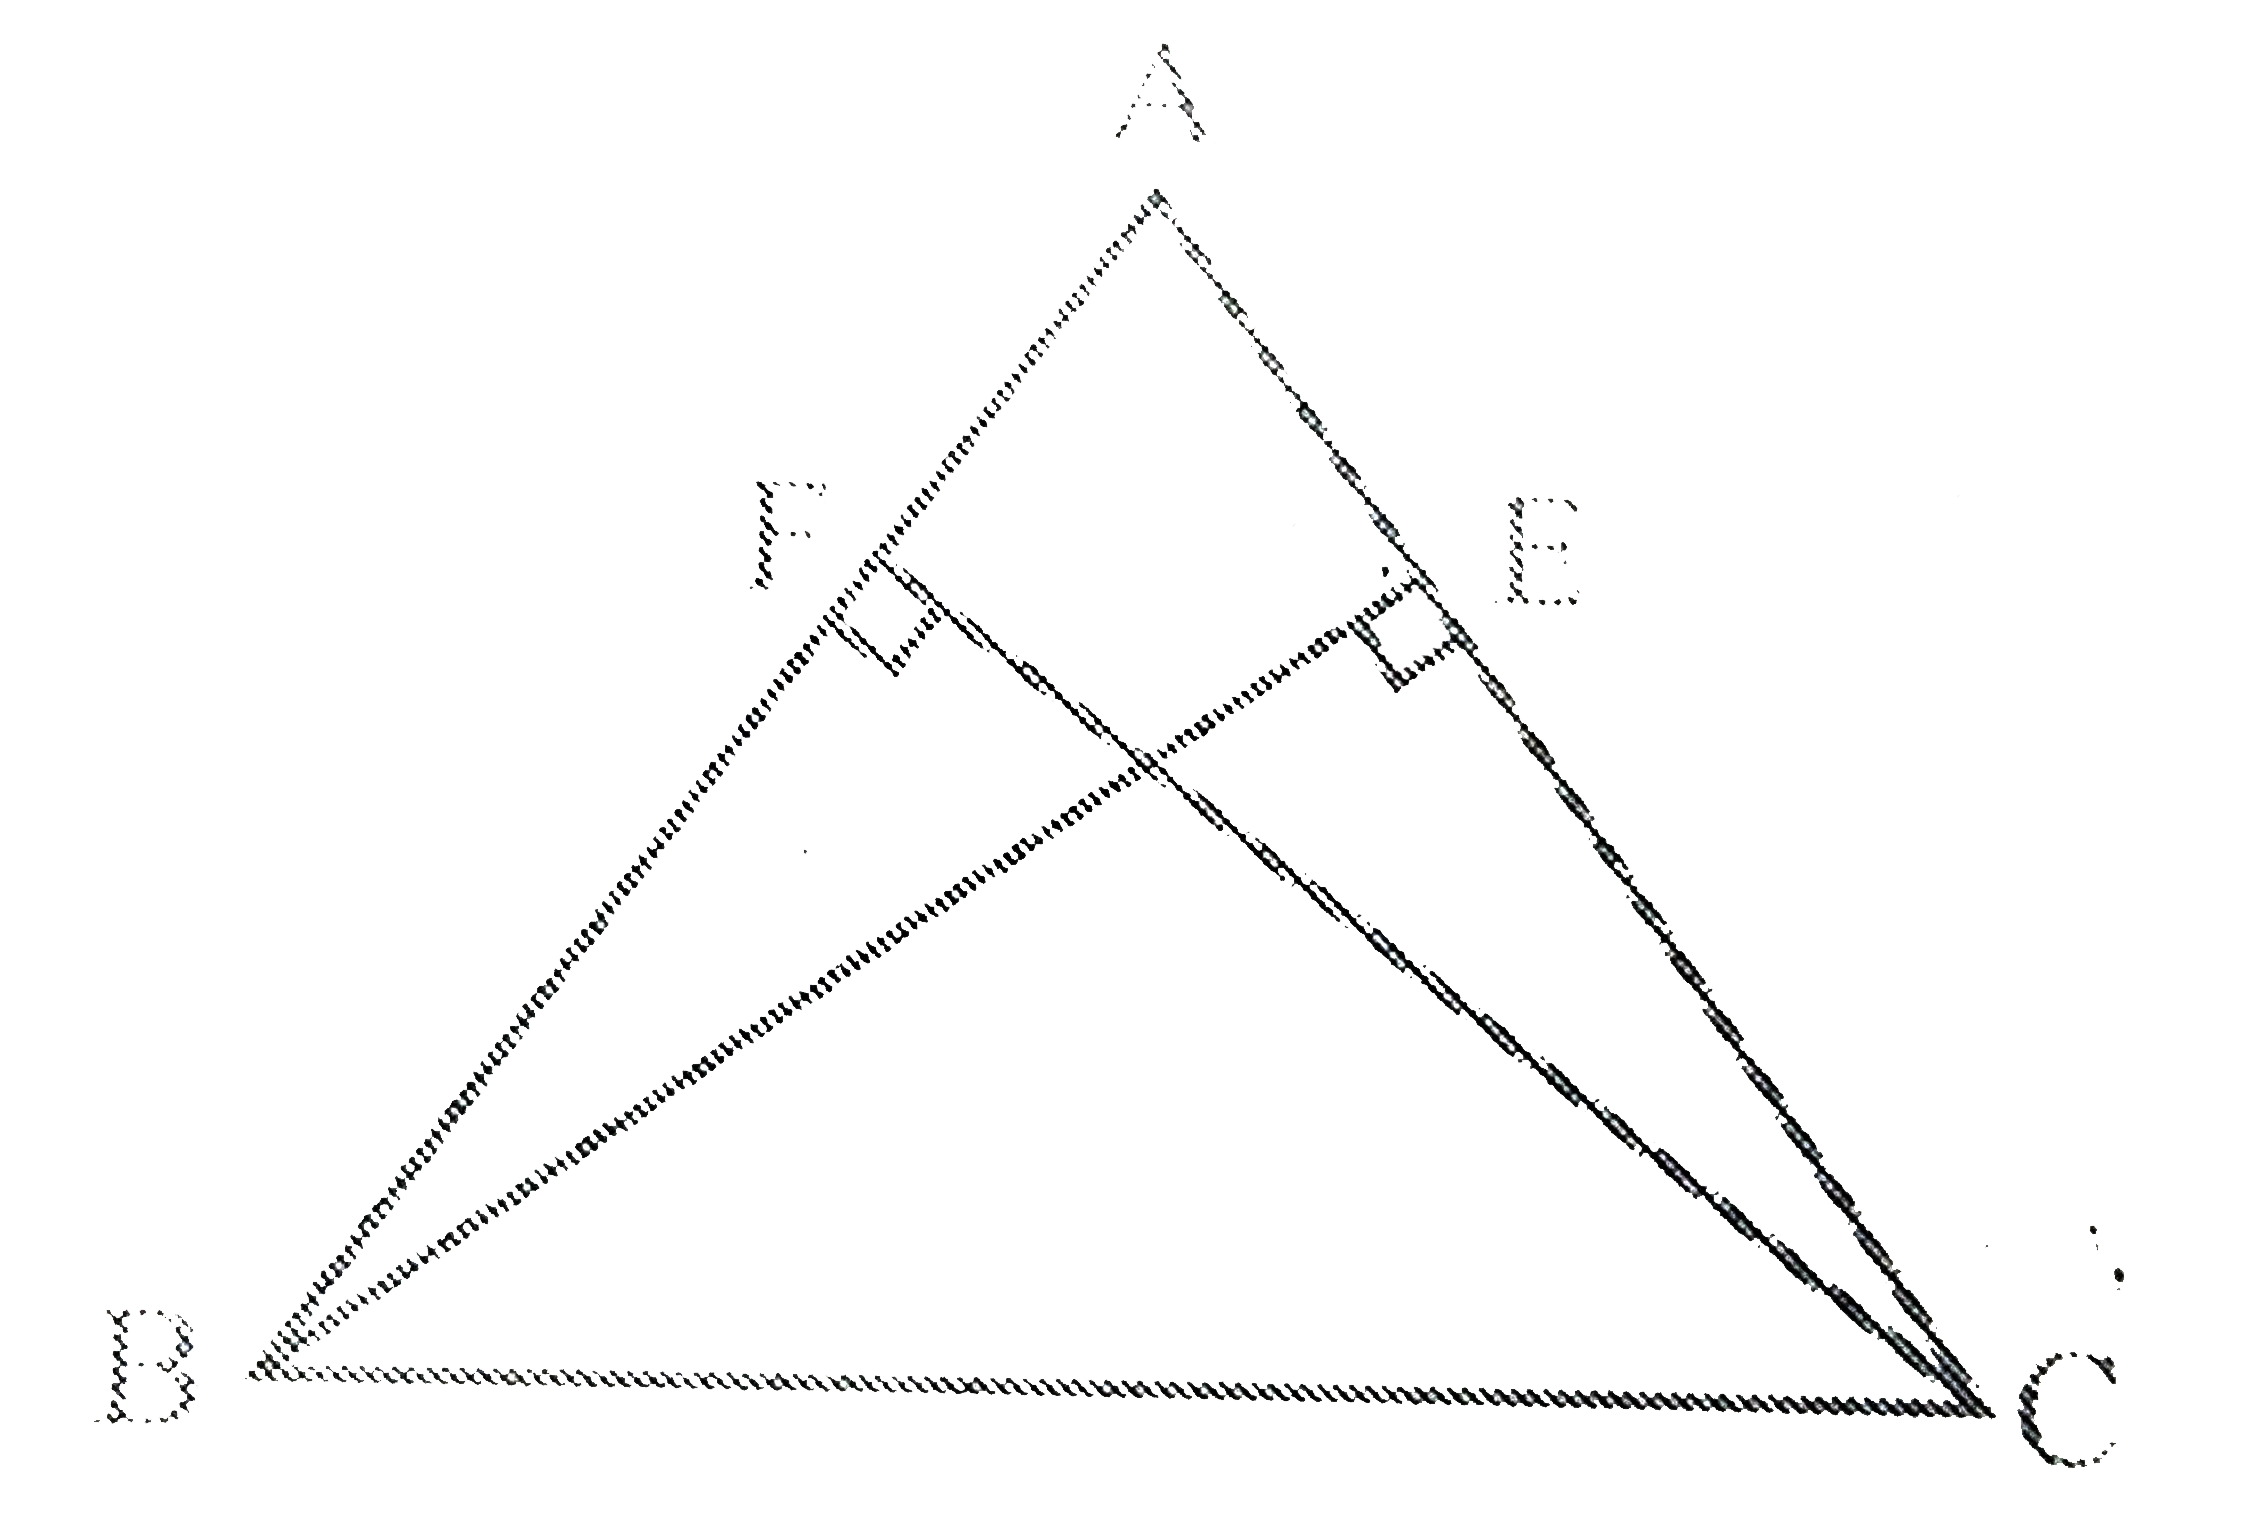 ABC एक समद्विबाहु त्रिभुज है, जिसमें बराबर भुजाओं AC और AB पर क्रमशः शीर्षलम्ब BE और CF खींचे गए हैं। दर्शाइए कि ये शीर्षलम्ब बराबर हैं।